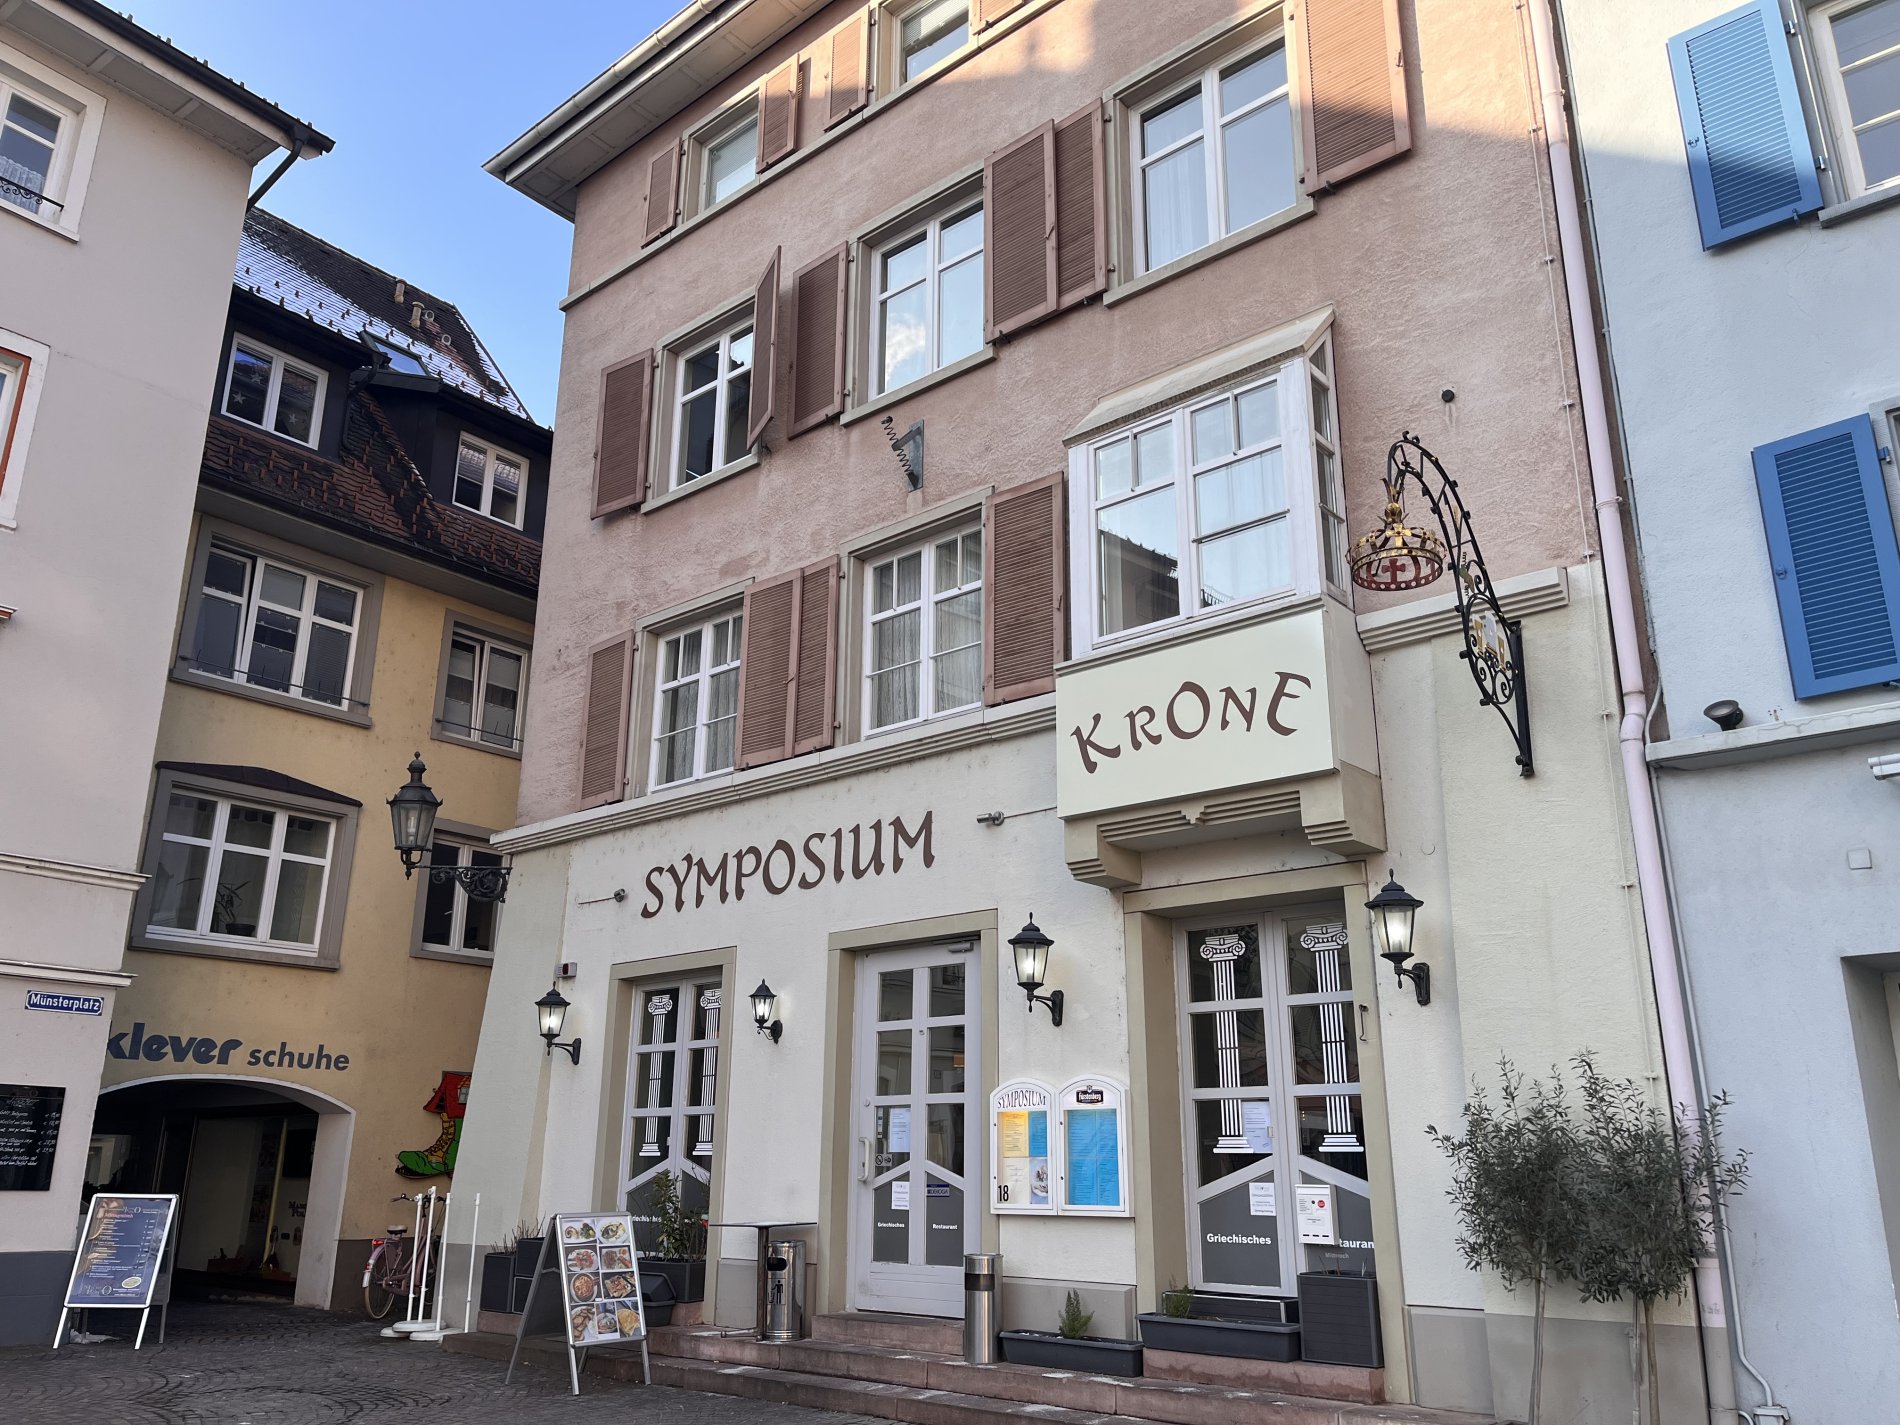 Das griechische Restaurant Symposium in Bad Säckingens Altstadt